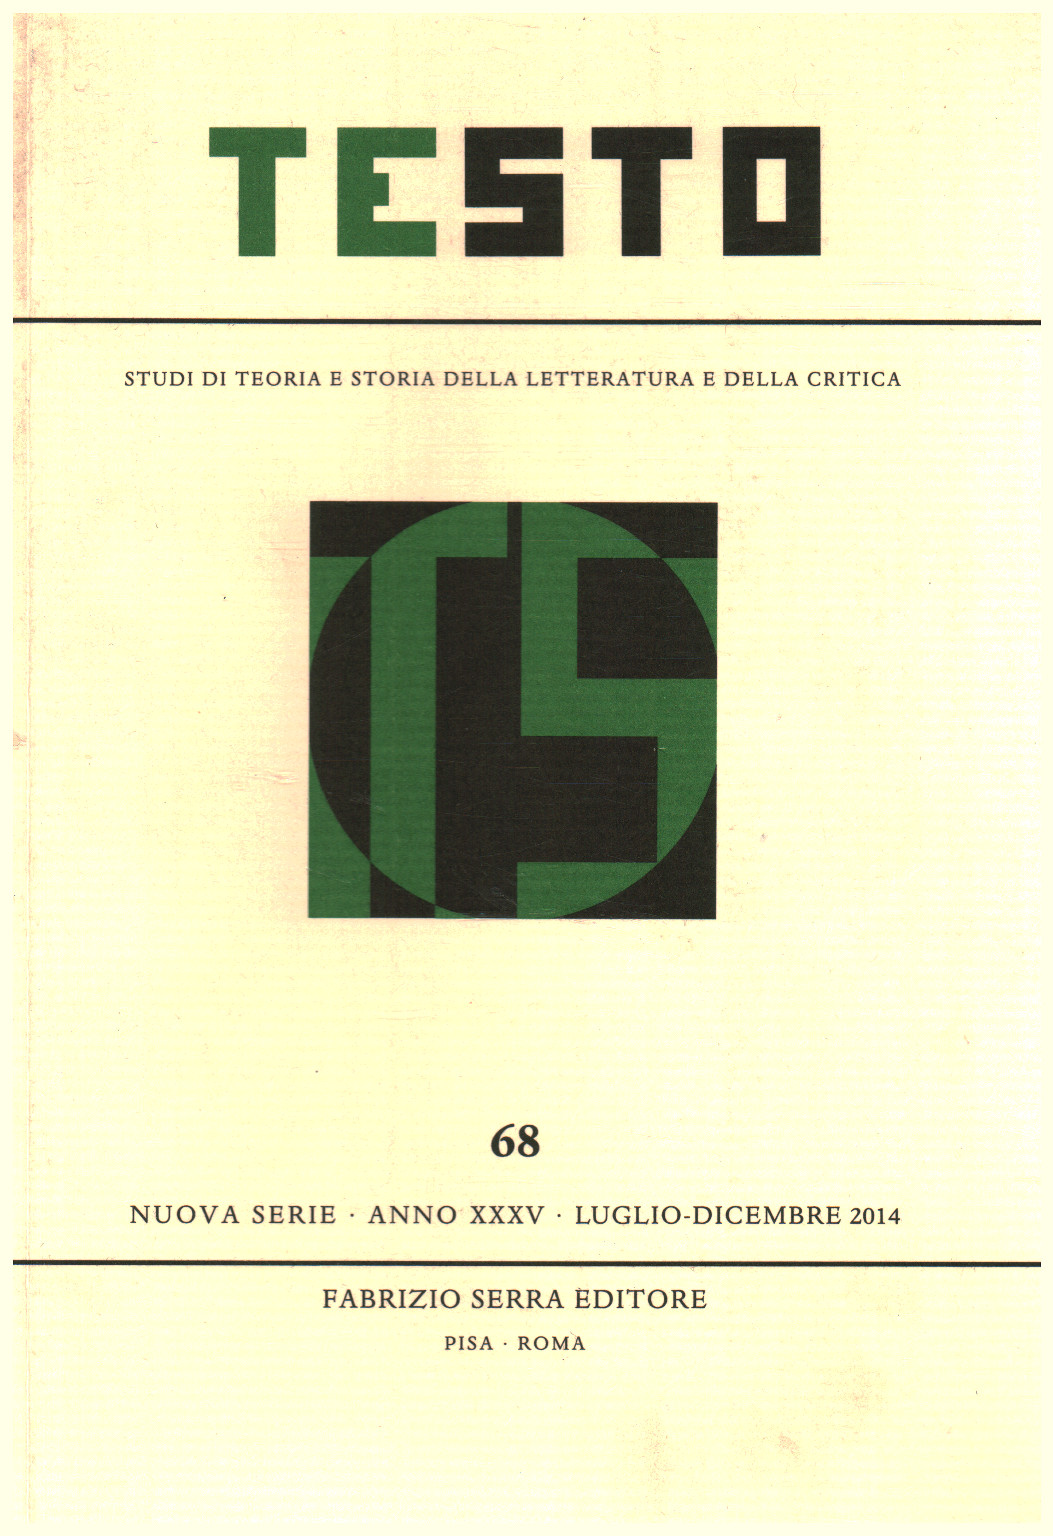 Texte,68, Année XXXV, juillet-décembre,2014, AA.VV